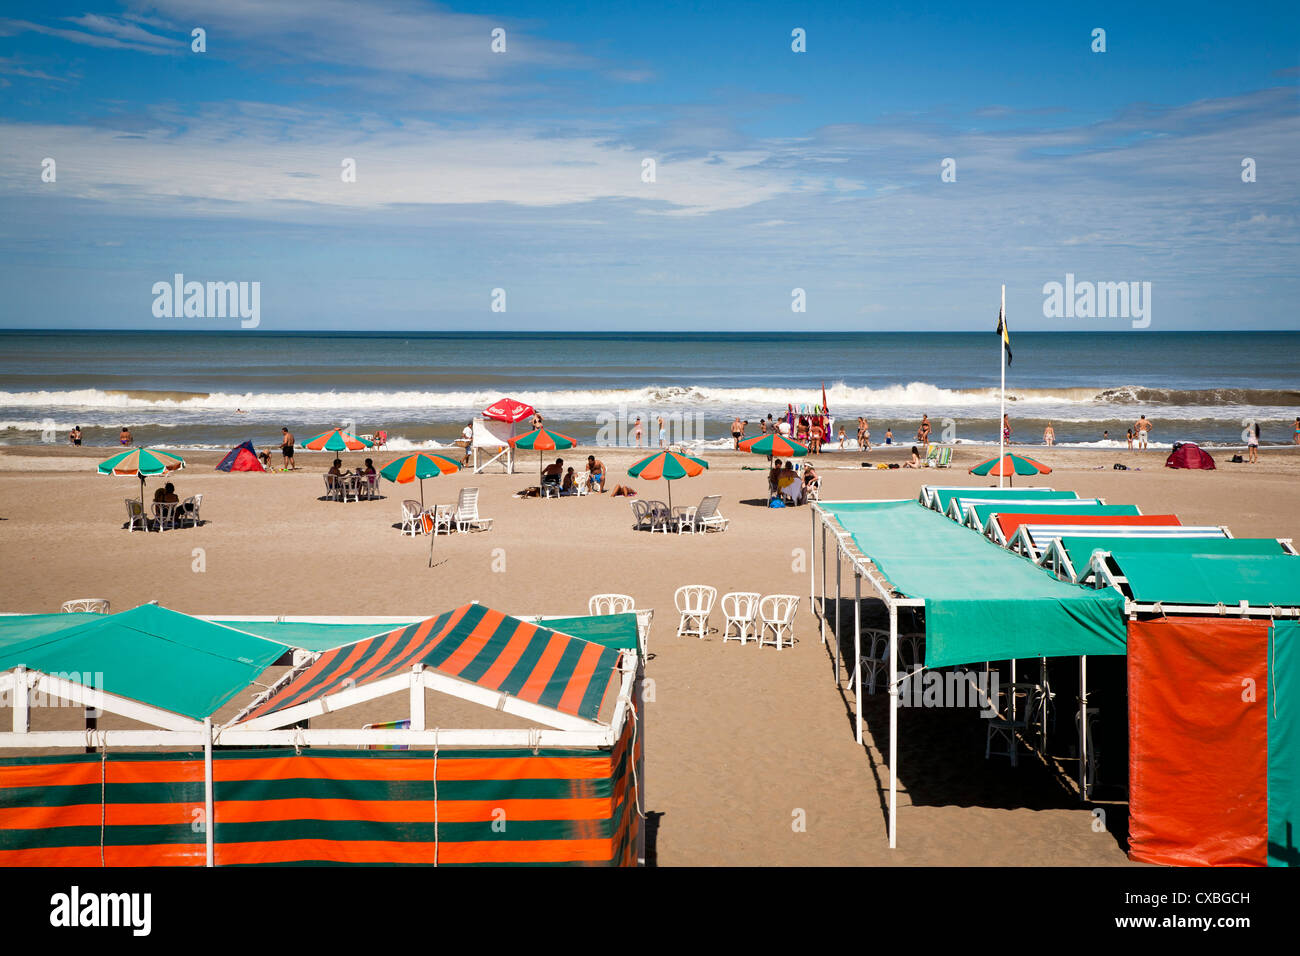 Balneario, una stazione balneare sulla spiaggia in Pinamar, Argentina. Foto Stock